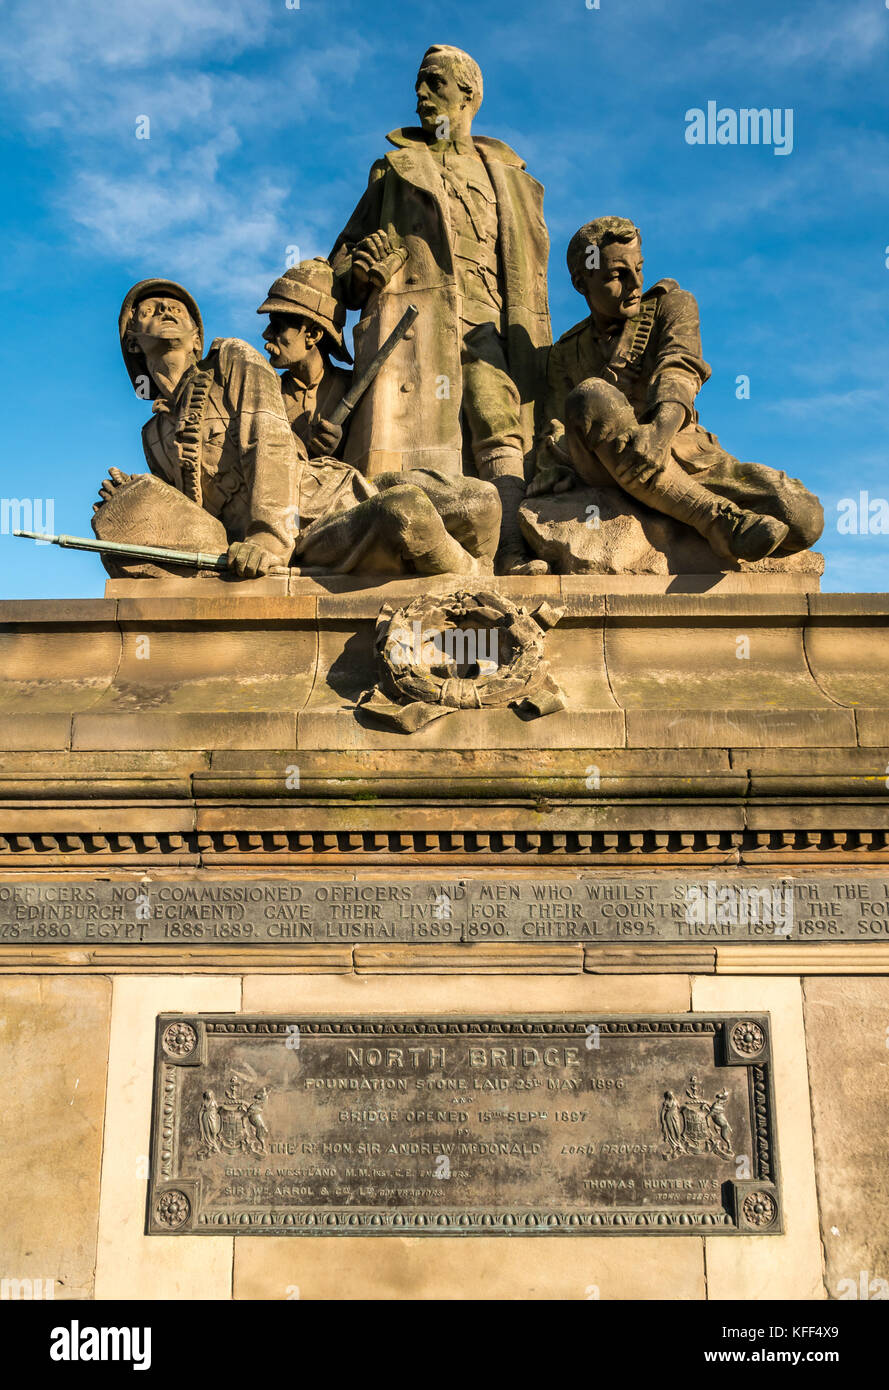 Kings Own Scottish Borderers Memorial Skulptur, North Bridge, Edinburgh, Schottland, UK von Bildhauer William Birnie mit Grundsteineinschrift Stockfoto